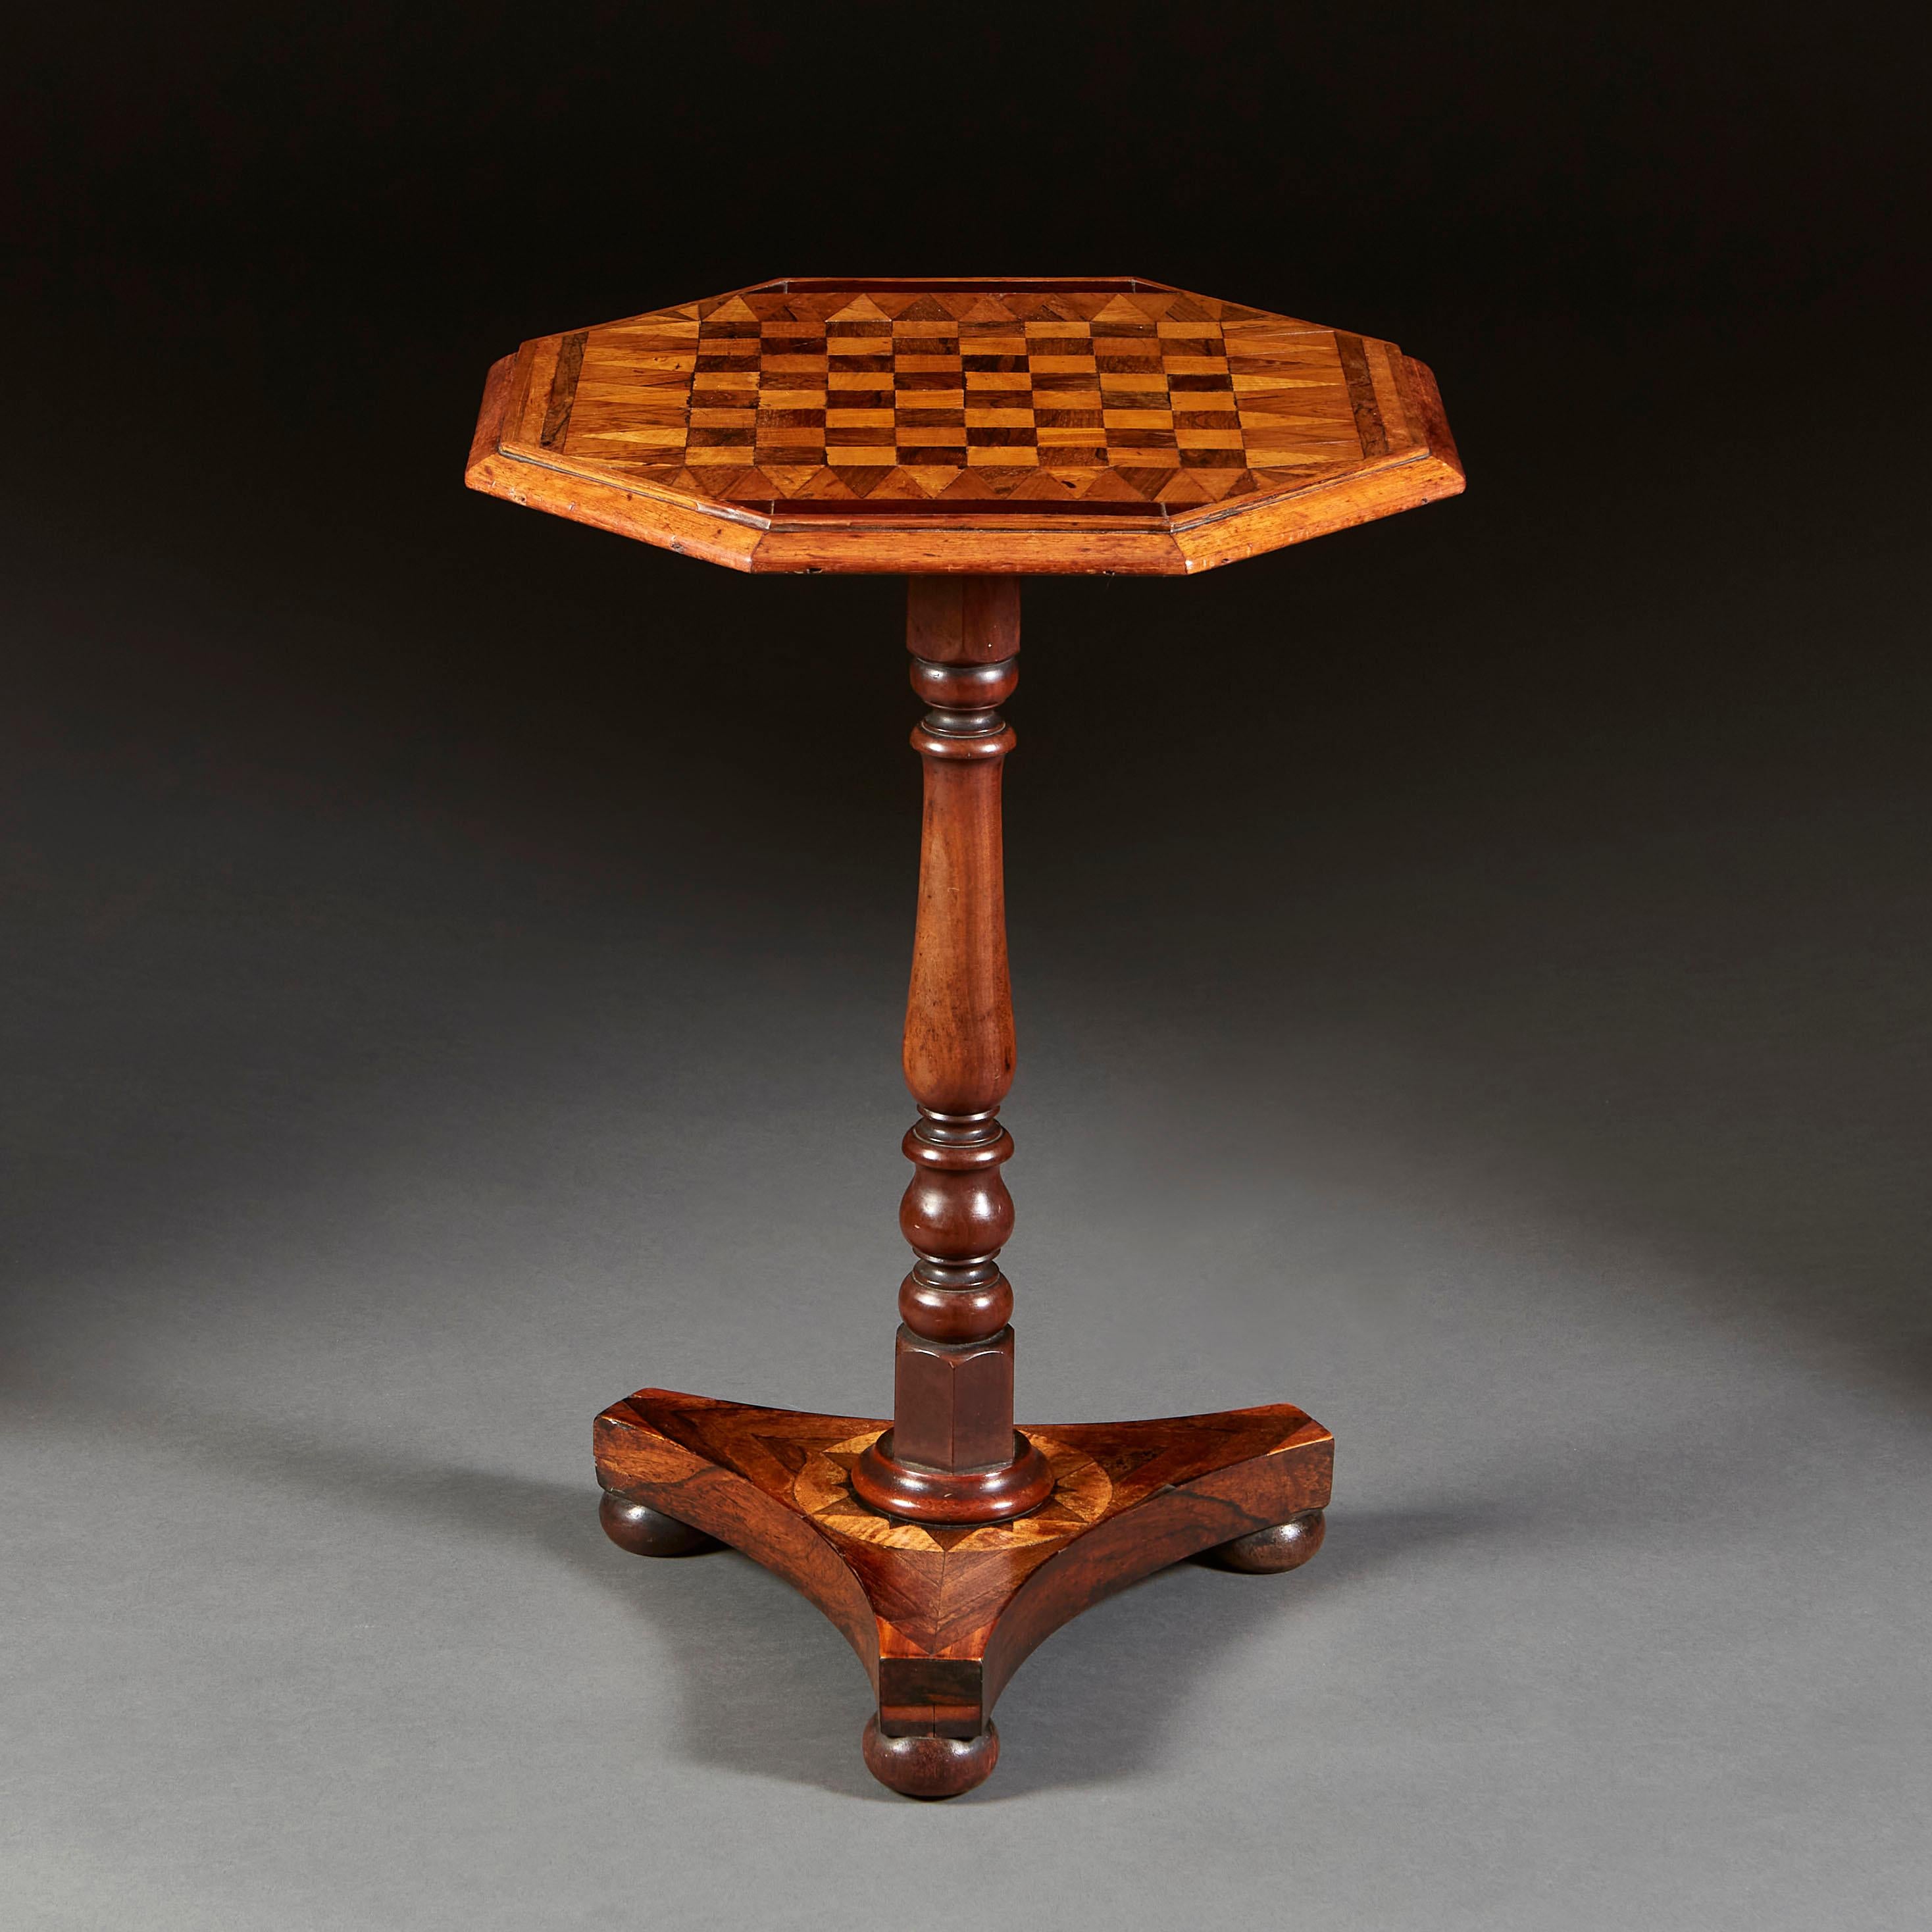 Table d'appoint du milieu du XIXe siècle avec plateau octogonal en marqueterie et échiquier, le montant tourné soutenu par une base tripode en marqueterie sur des pieds en forme de chignon.